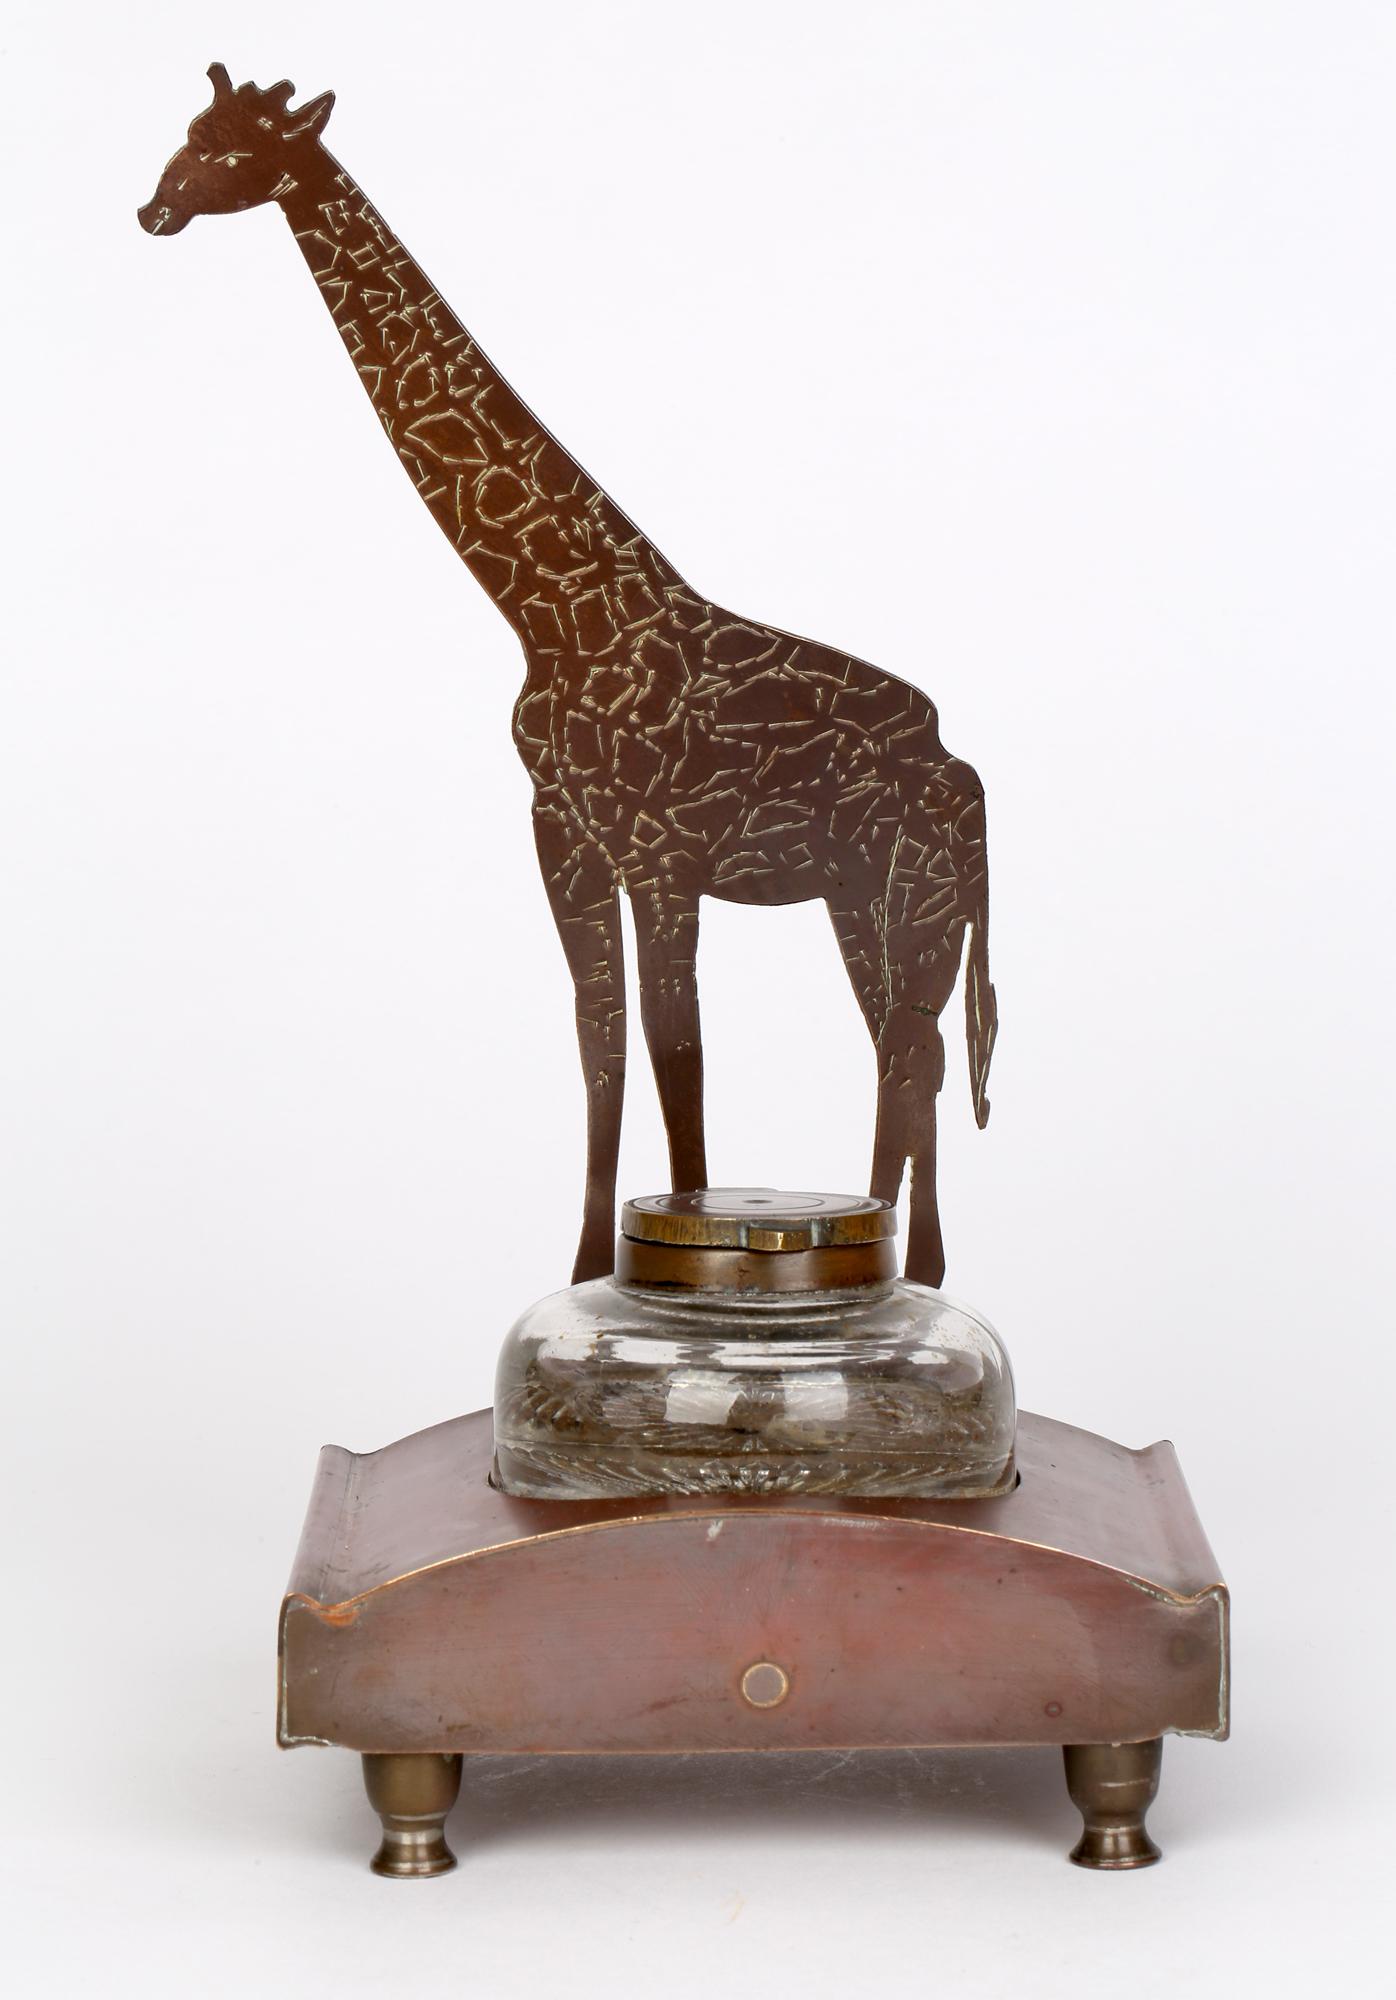 Copper Ignatius Taschner 'German, 1871-1913' Jugendstil Giraffe Mounted Ink Stand